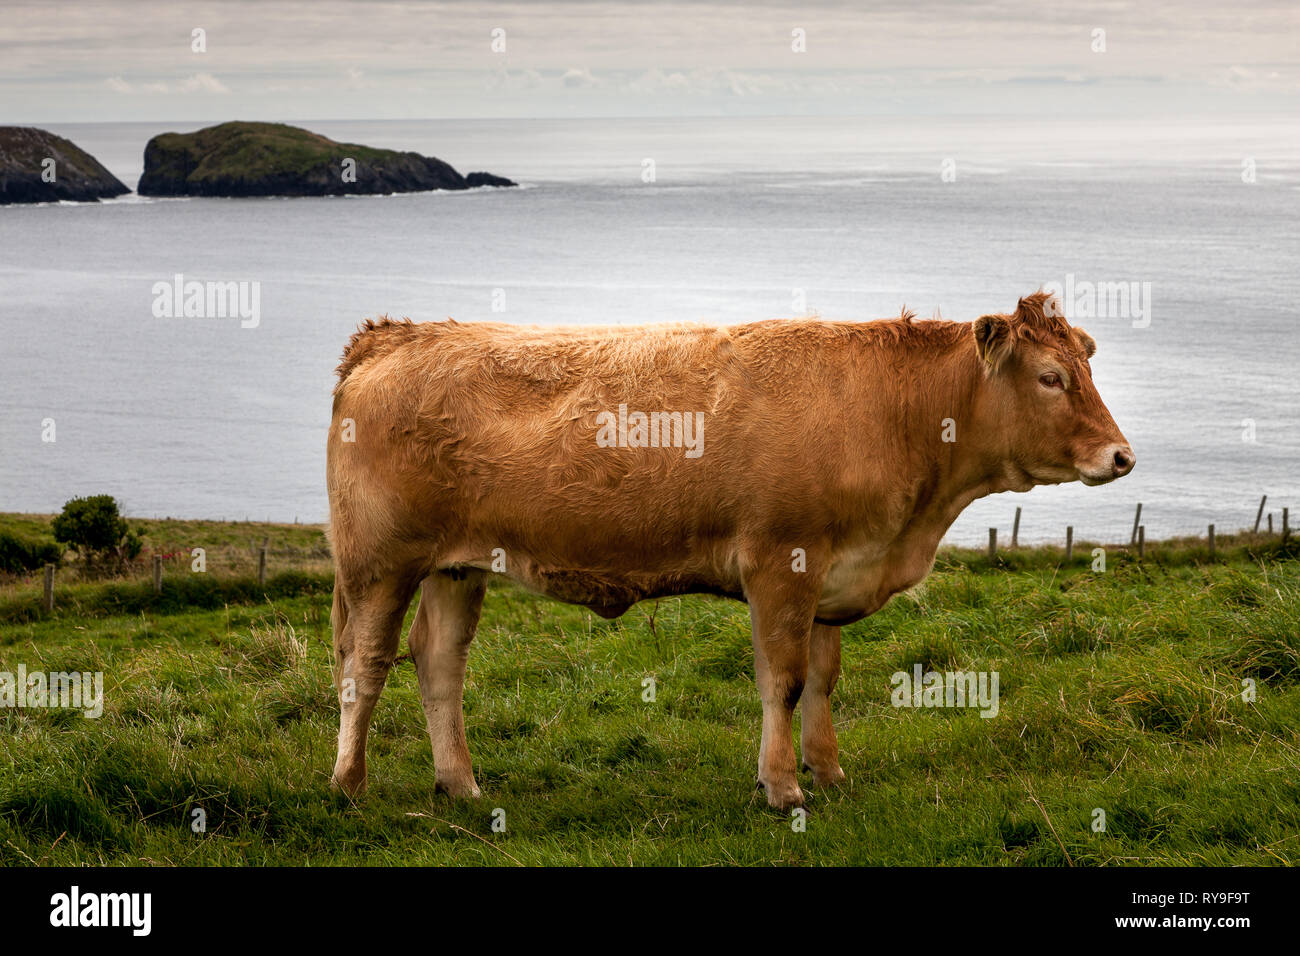 Dursey Island, Cork, Irland. 11. August 2015. Einen Preis Stier steht in einem Feld auf dursey Island in der Beara Halbinsel in West Cork, Irland. Stockfoto